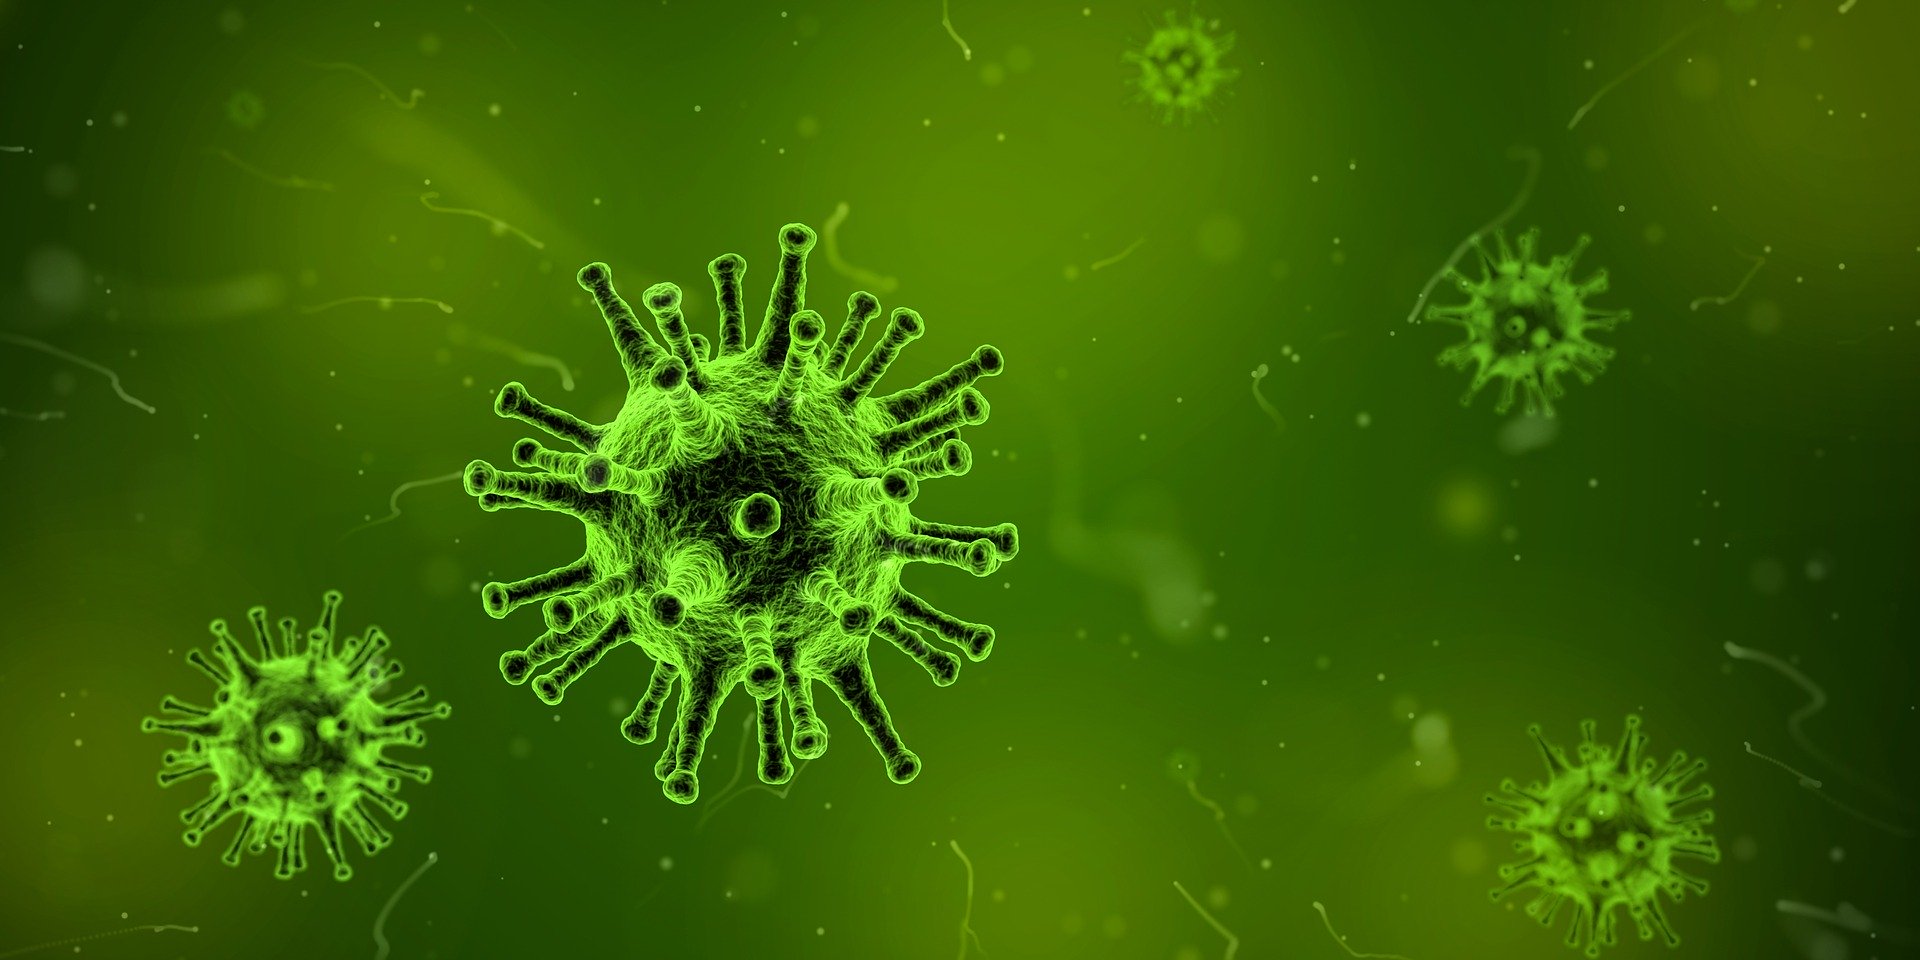 virus-1812092_1920 (c) Bild von Arek Socha auf Pixabay